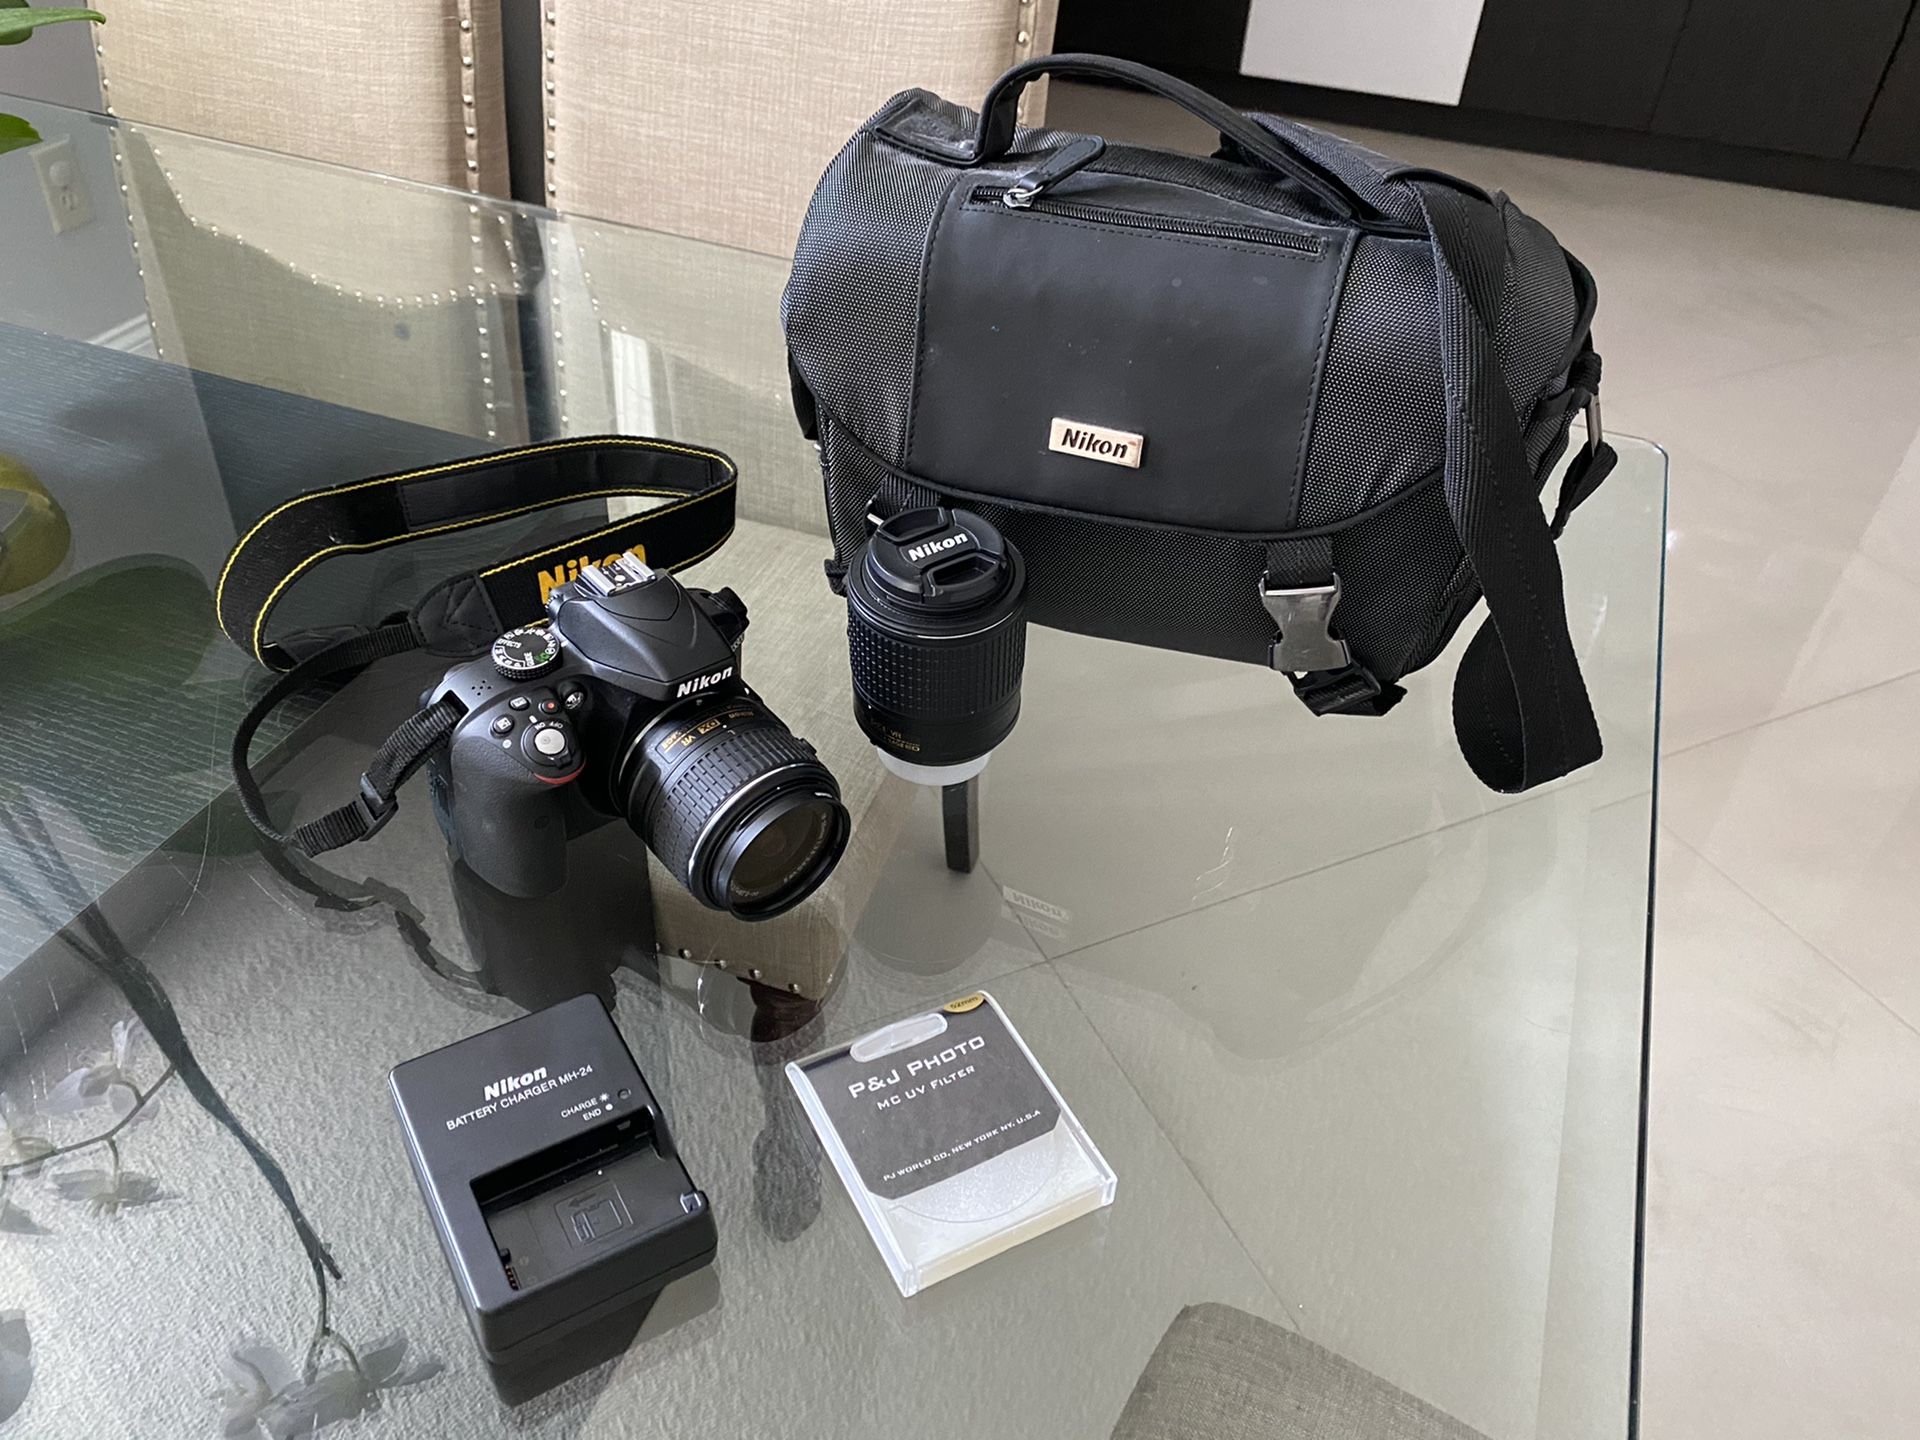 Nikon d3300 camera